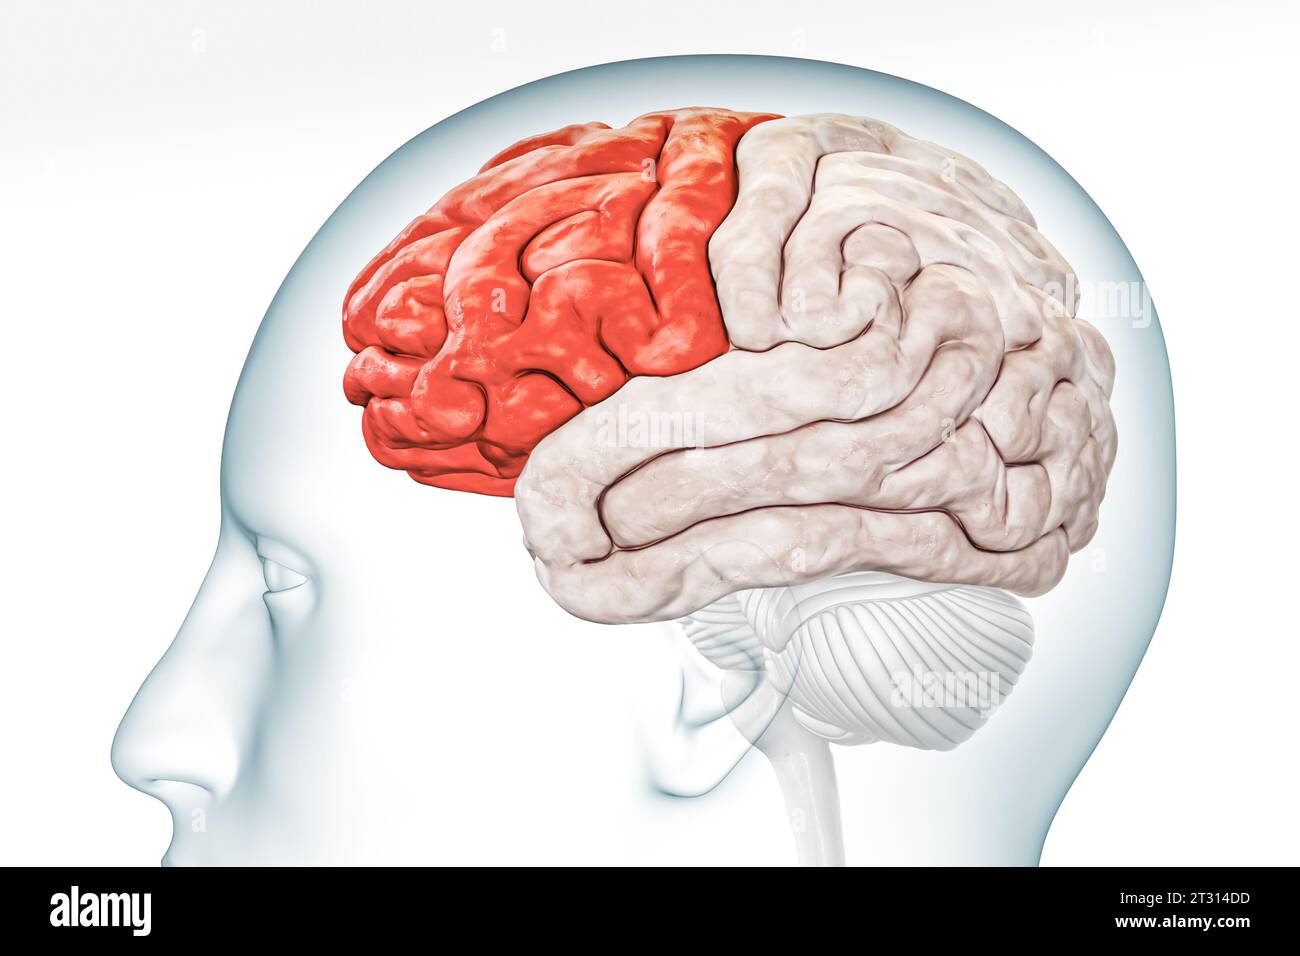 Lobo frontale della corteccia cerebrale nella vista del profilo di colore rosso con corpo isolato su sfondo bianco illustrazione di rendering 3D. Anatomia cerebrale umana, neurolog Foto Stock